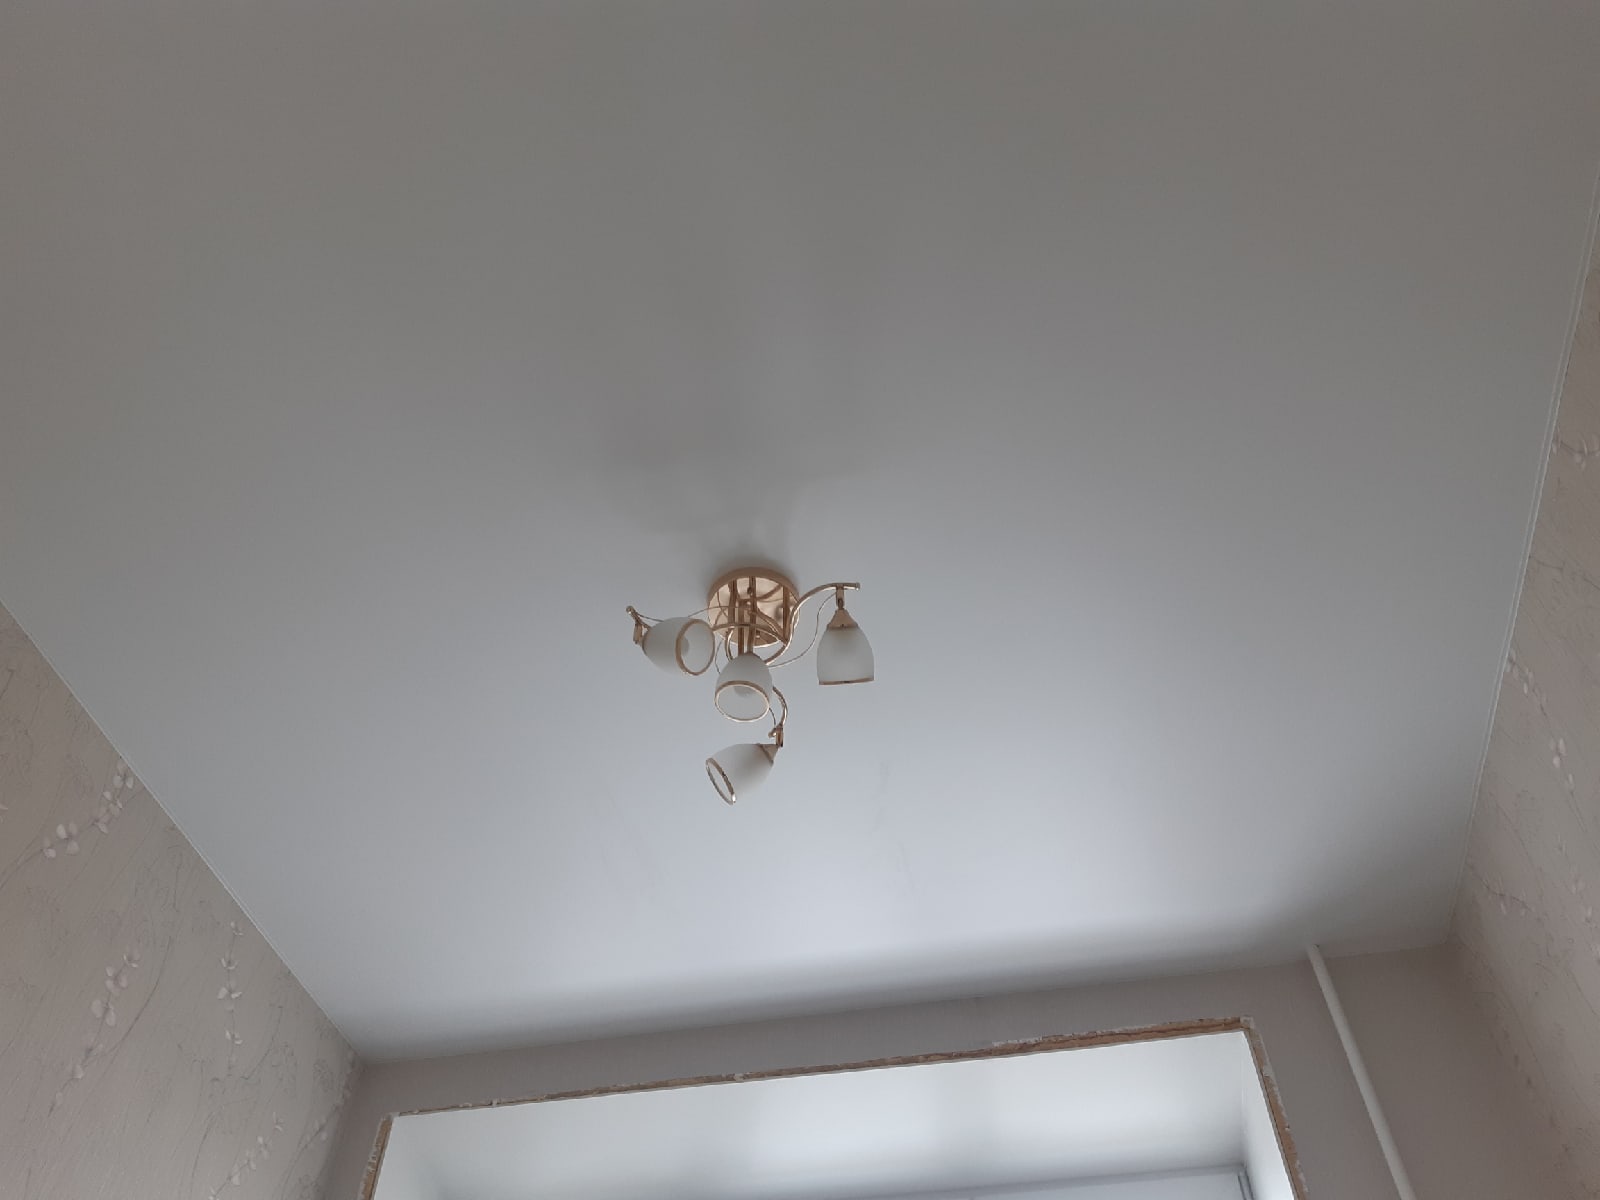 Матовый натяжной потолок в комнату 15 кв.м. фото Кострома